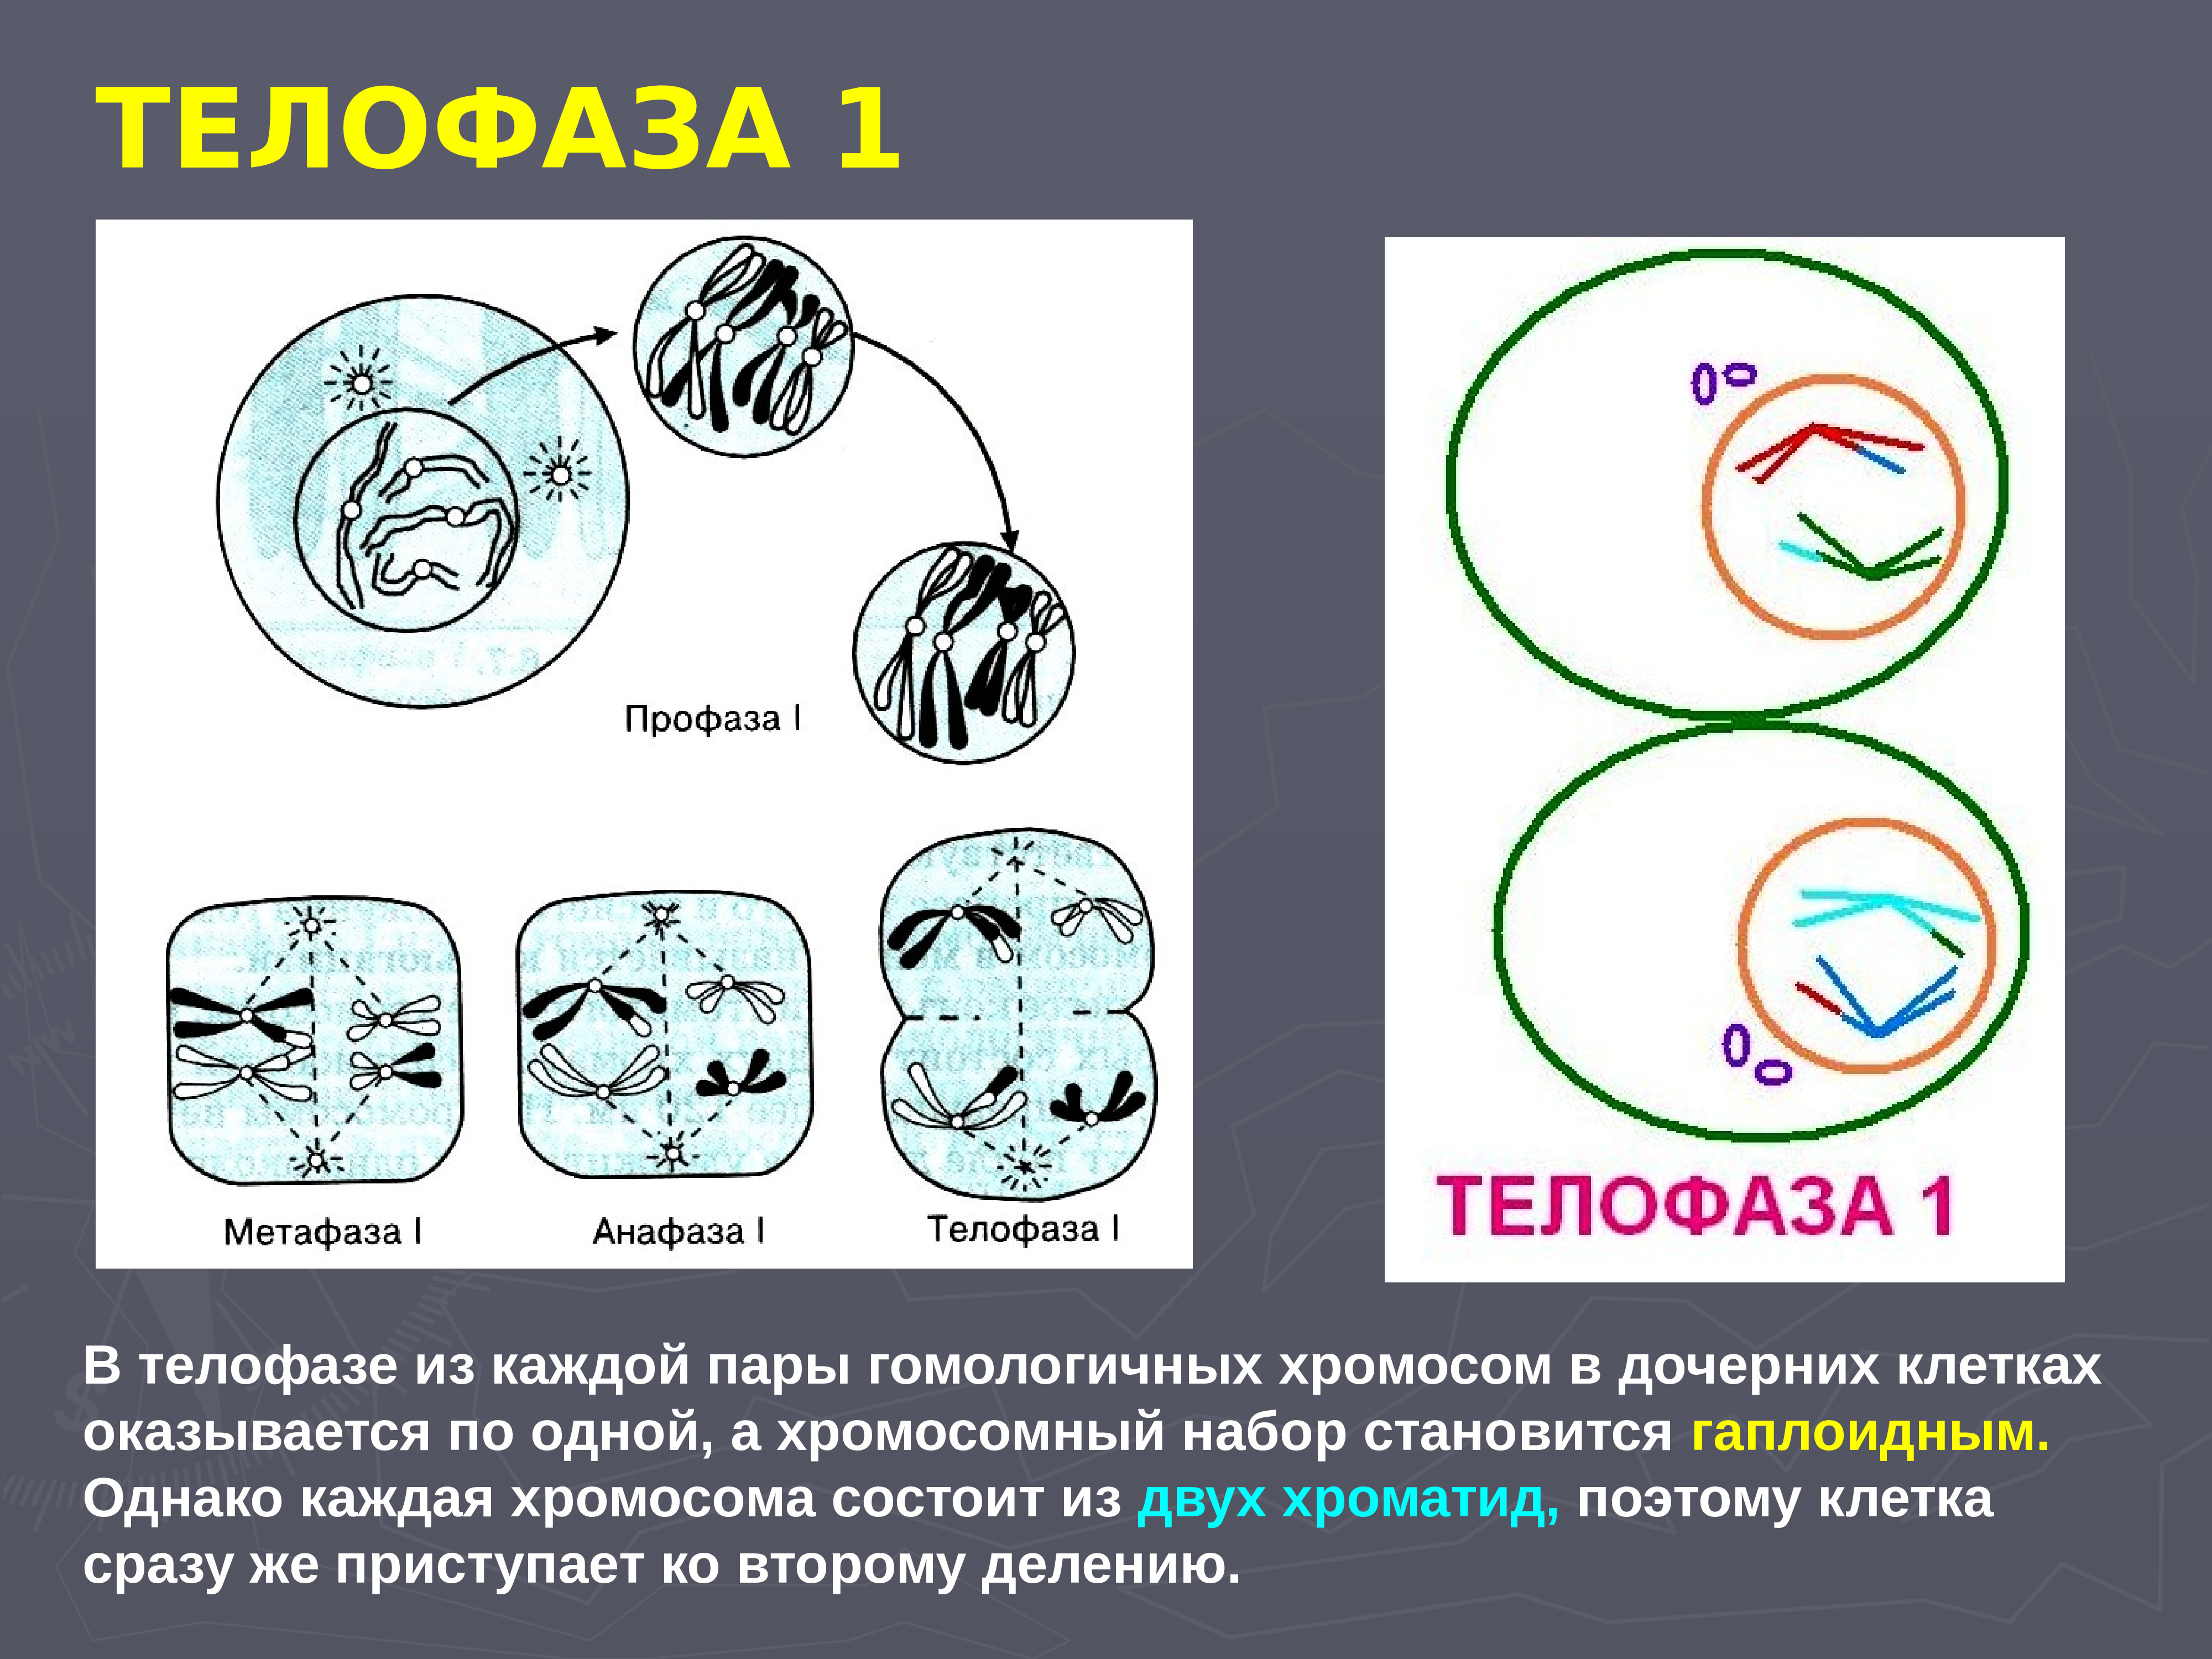 Мейоз анафаза 2 набор хромосом. Телофаза мейоза 1. Мейоз 1 телофаза 1. Телофаза 2. Телофаза набор хромосом.